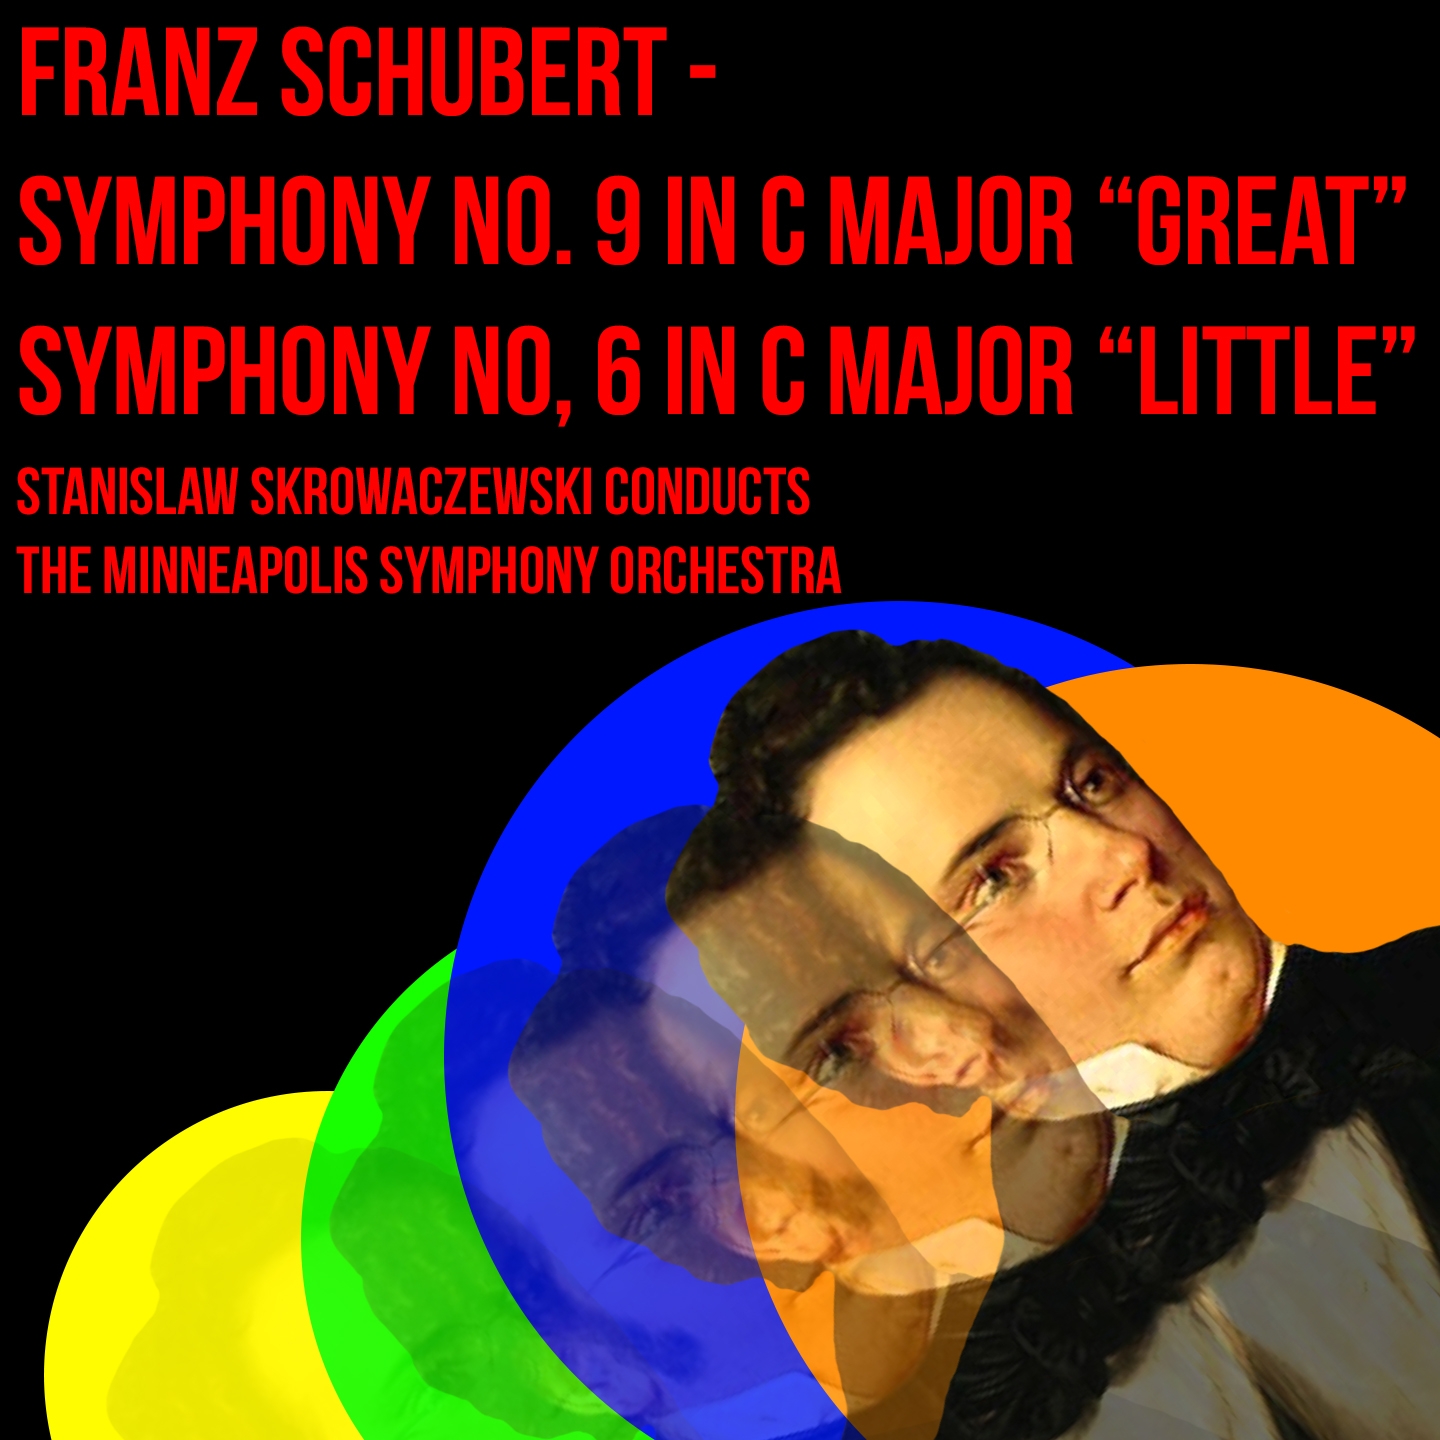 Franz Schubert - Symphony No. 9 In C Major "Great" & Symphony No. 6 In C Major "Little"